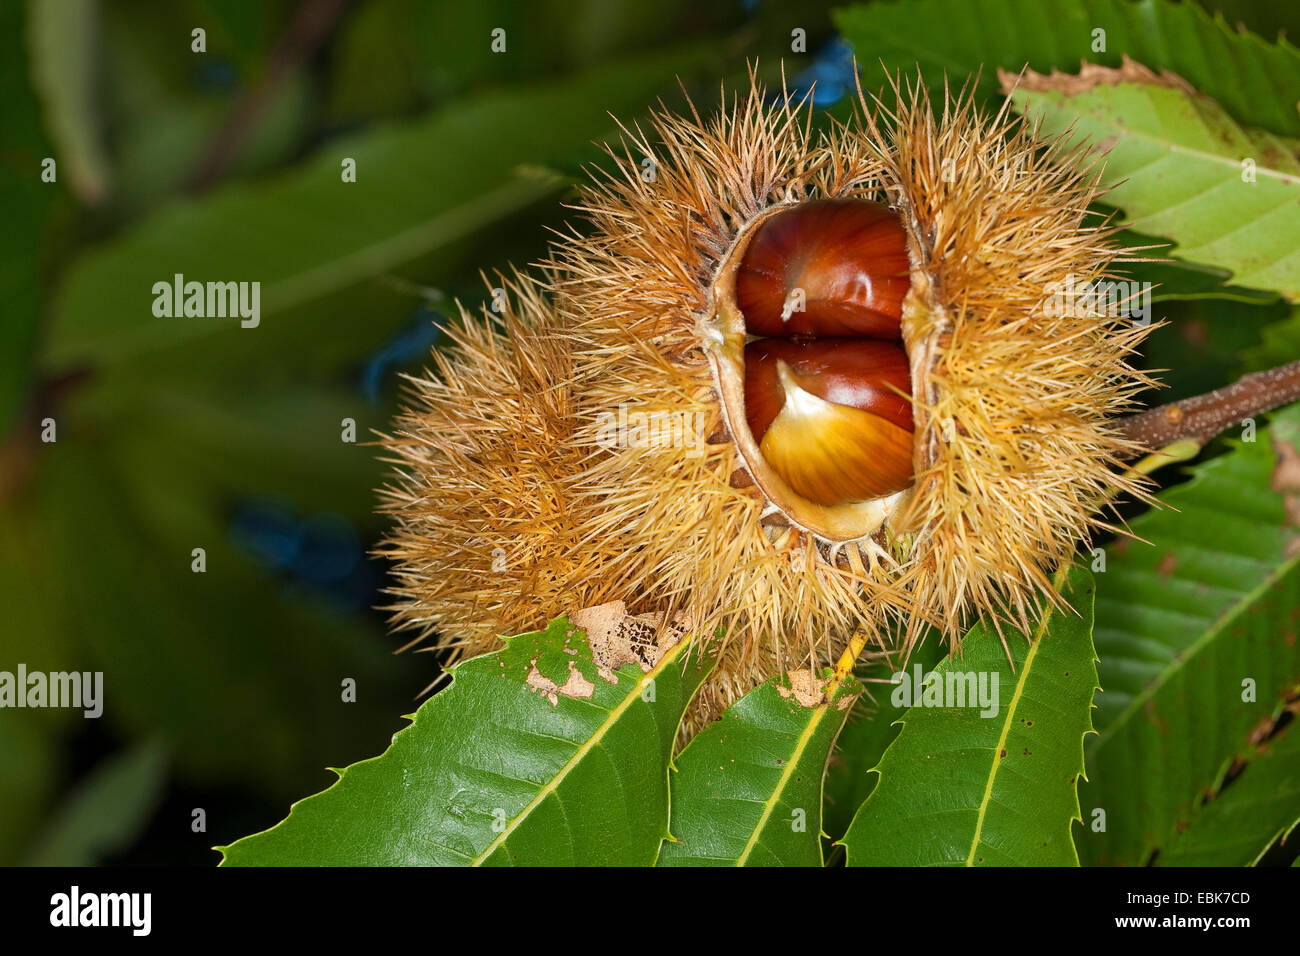 Castagno, dolce castagno (Castanea sativa), la frutta in una struttura ad albero Foto Stock